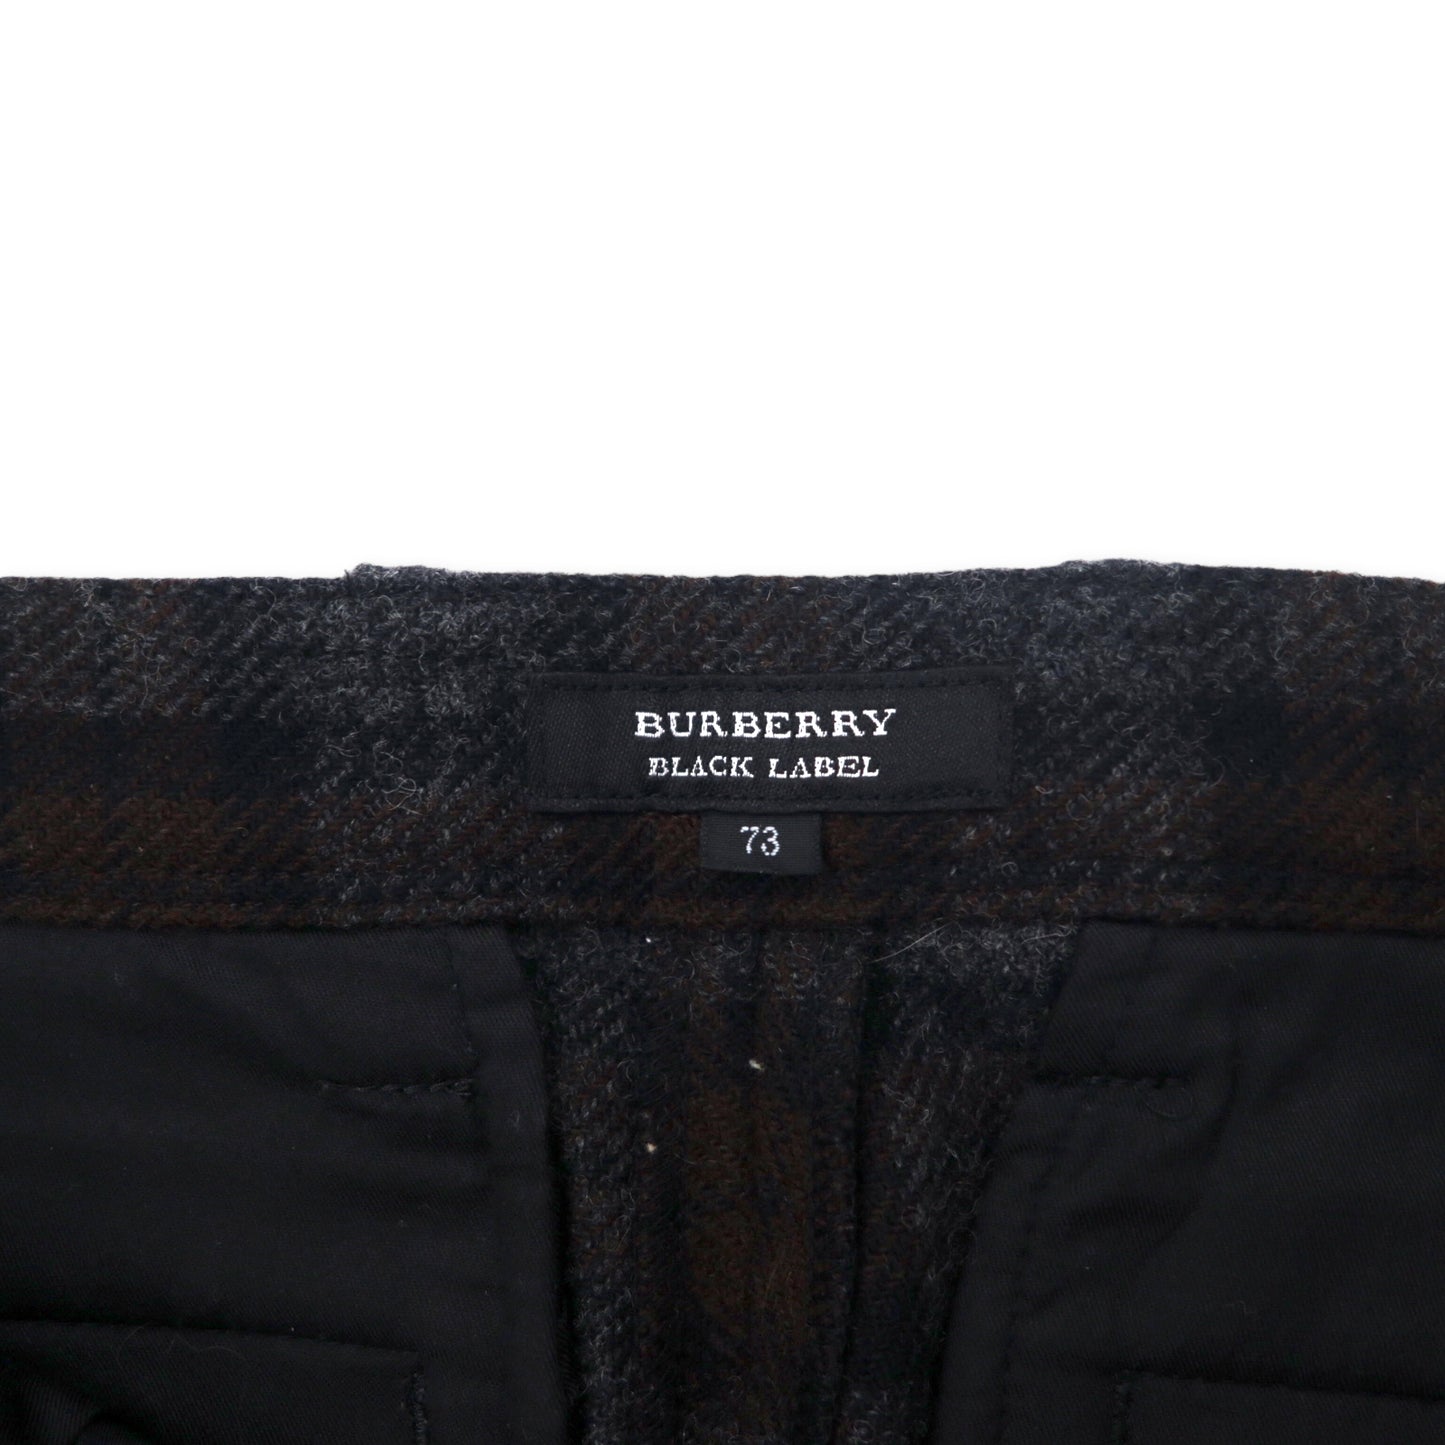 BURBERRY BLACK LABEL ツイードパンツ 73 グレー ブラウン チェック ウール 羊毛